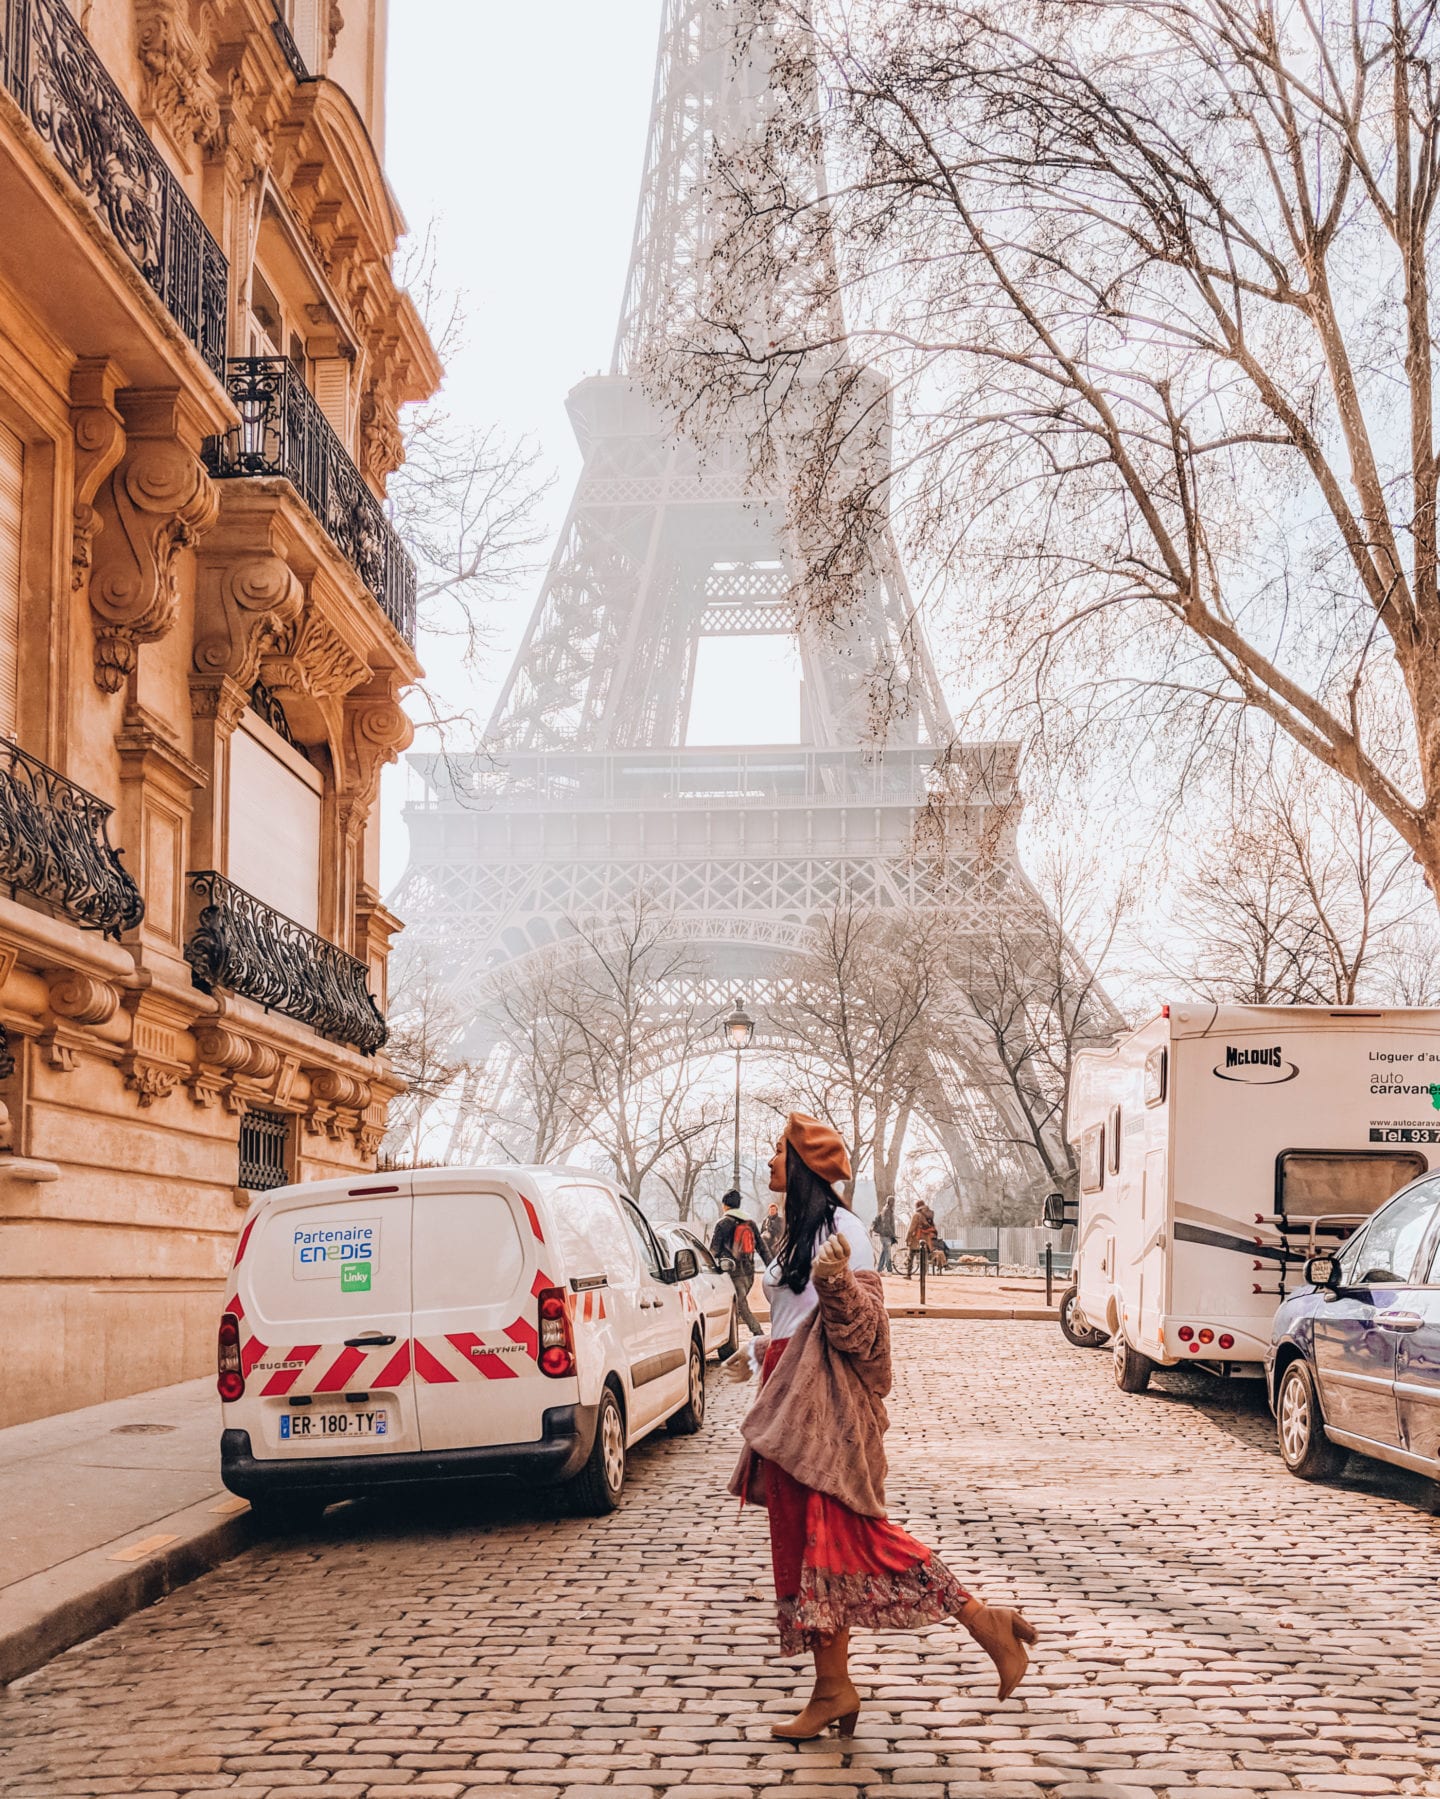 Eiffel Tower Restaurant (@eiffeltowerrestaurant) • Instagram photos and  videos